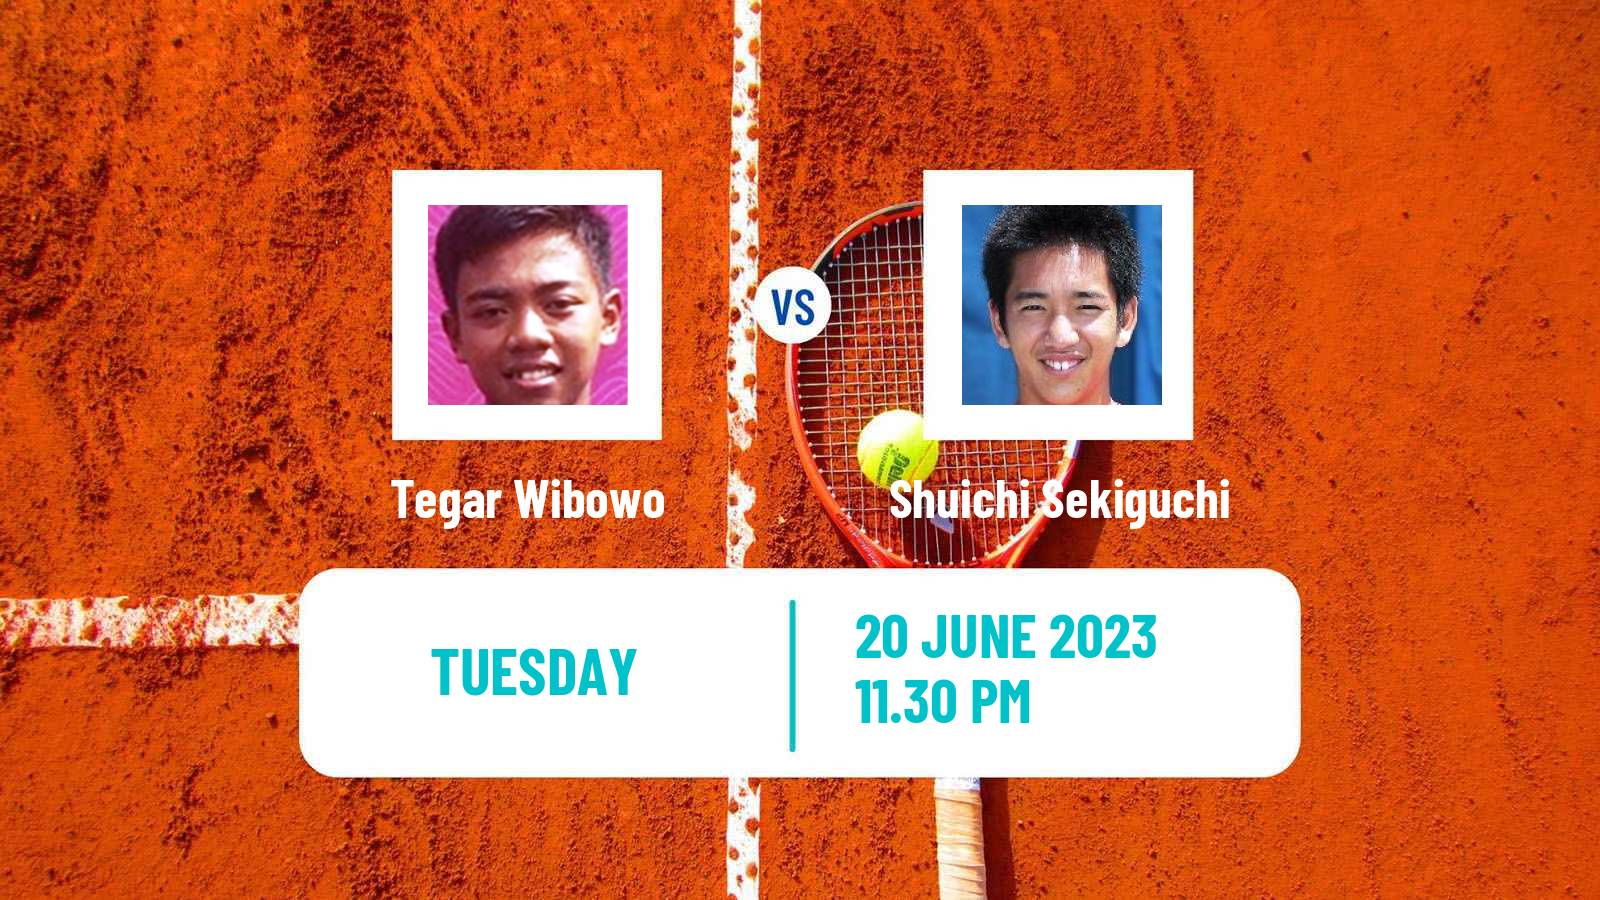 Tennis ITF M15 Jakarta 4 Men Tegar Wibowo - Shuichi Sekiguchi